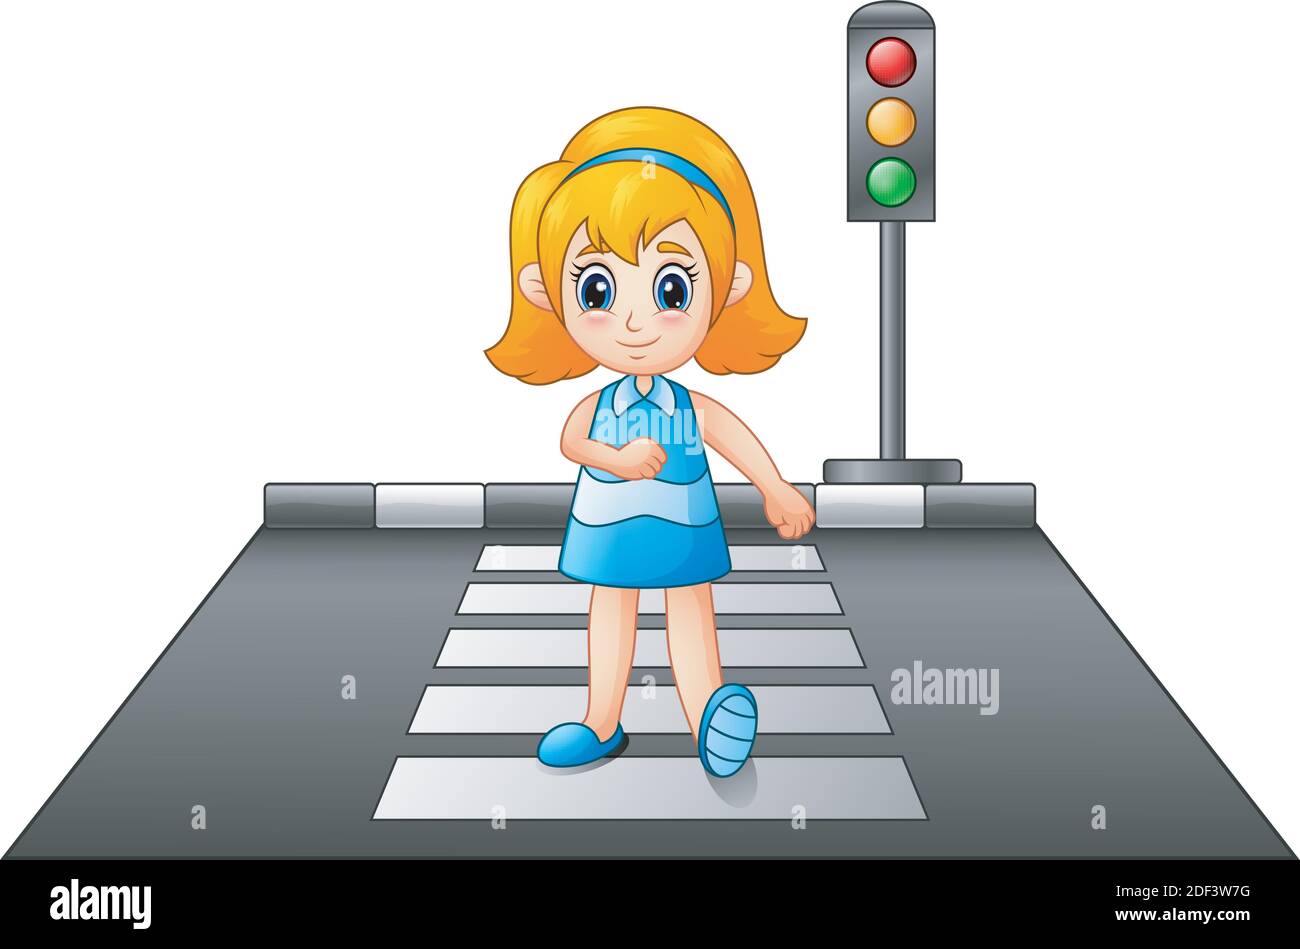 Vector illustration of Cartoon girl crossing the street Stock Vector